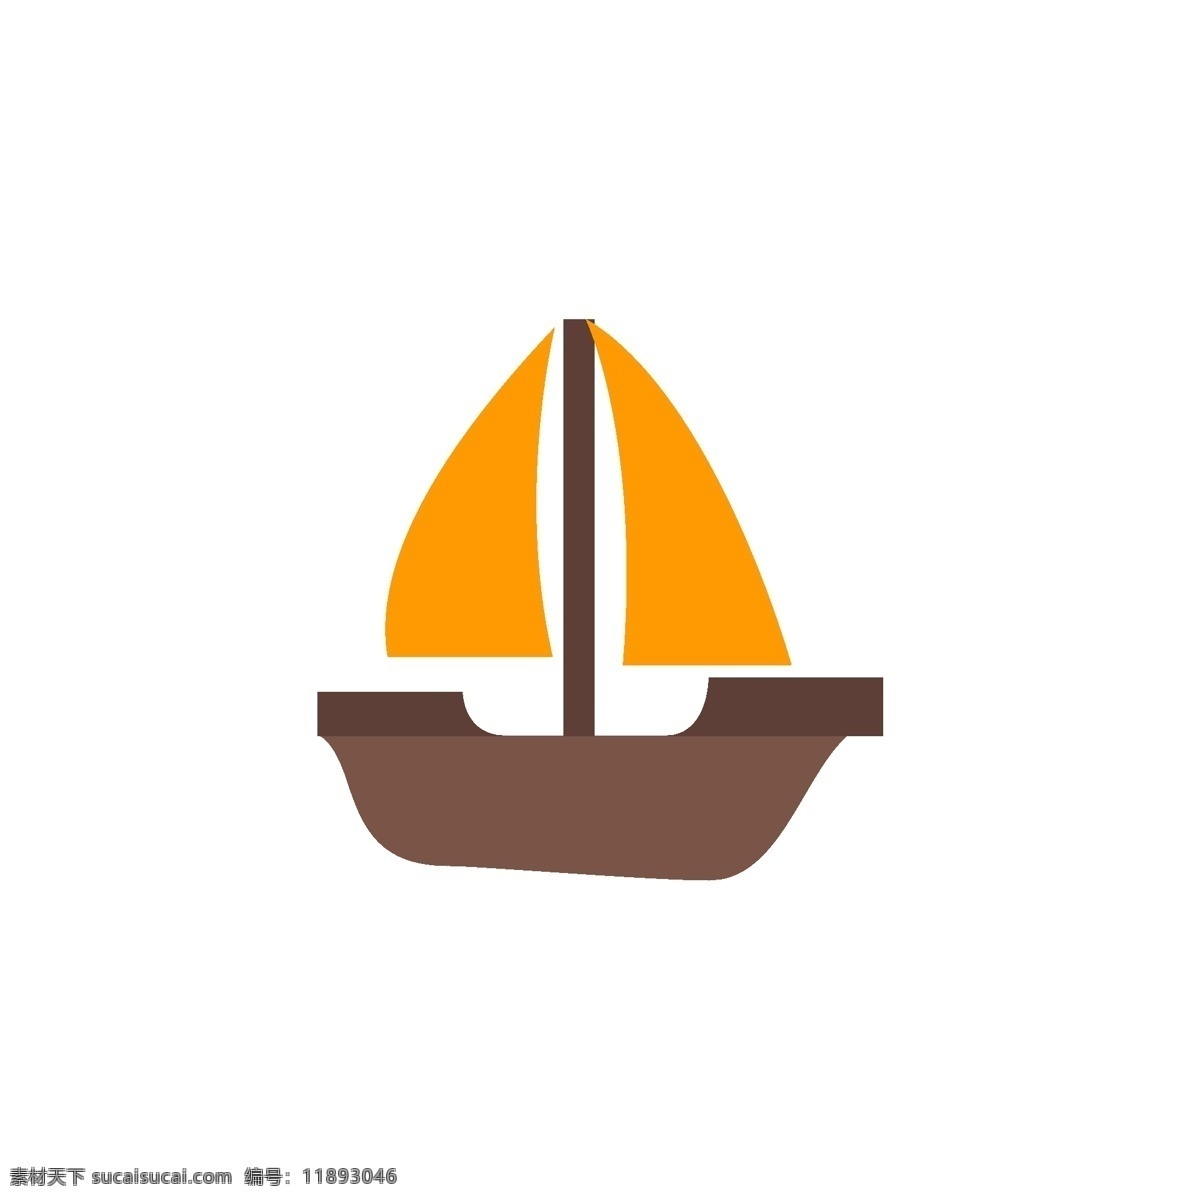 黄色帆船图标 黄色帆船 帆船 船